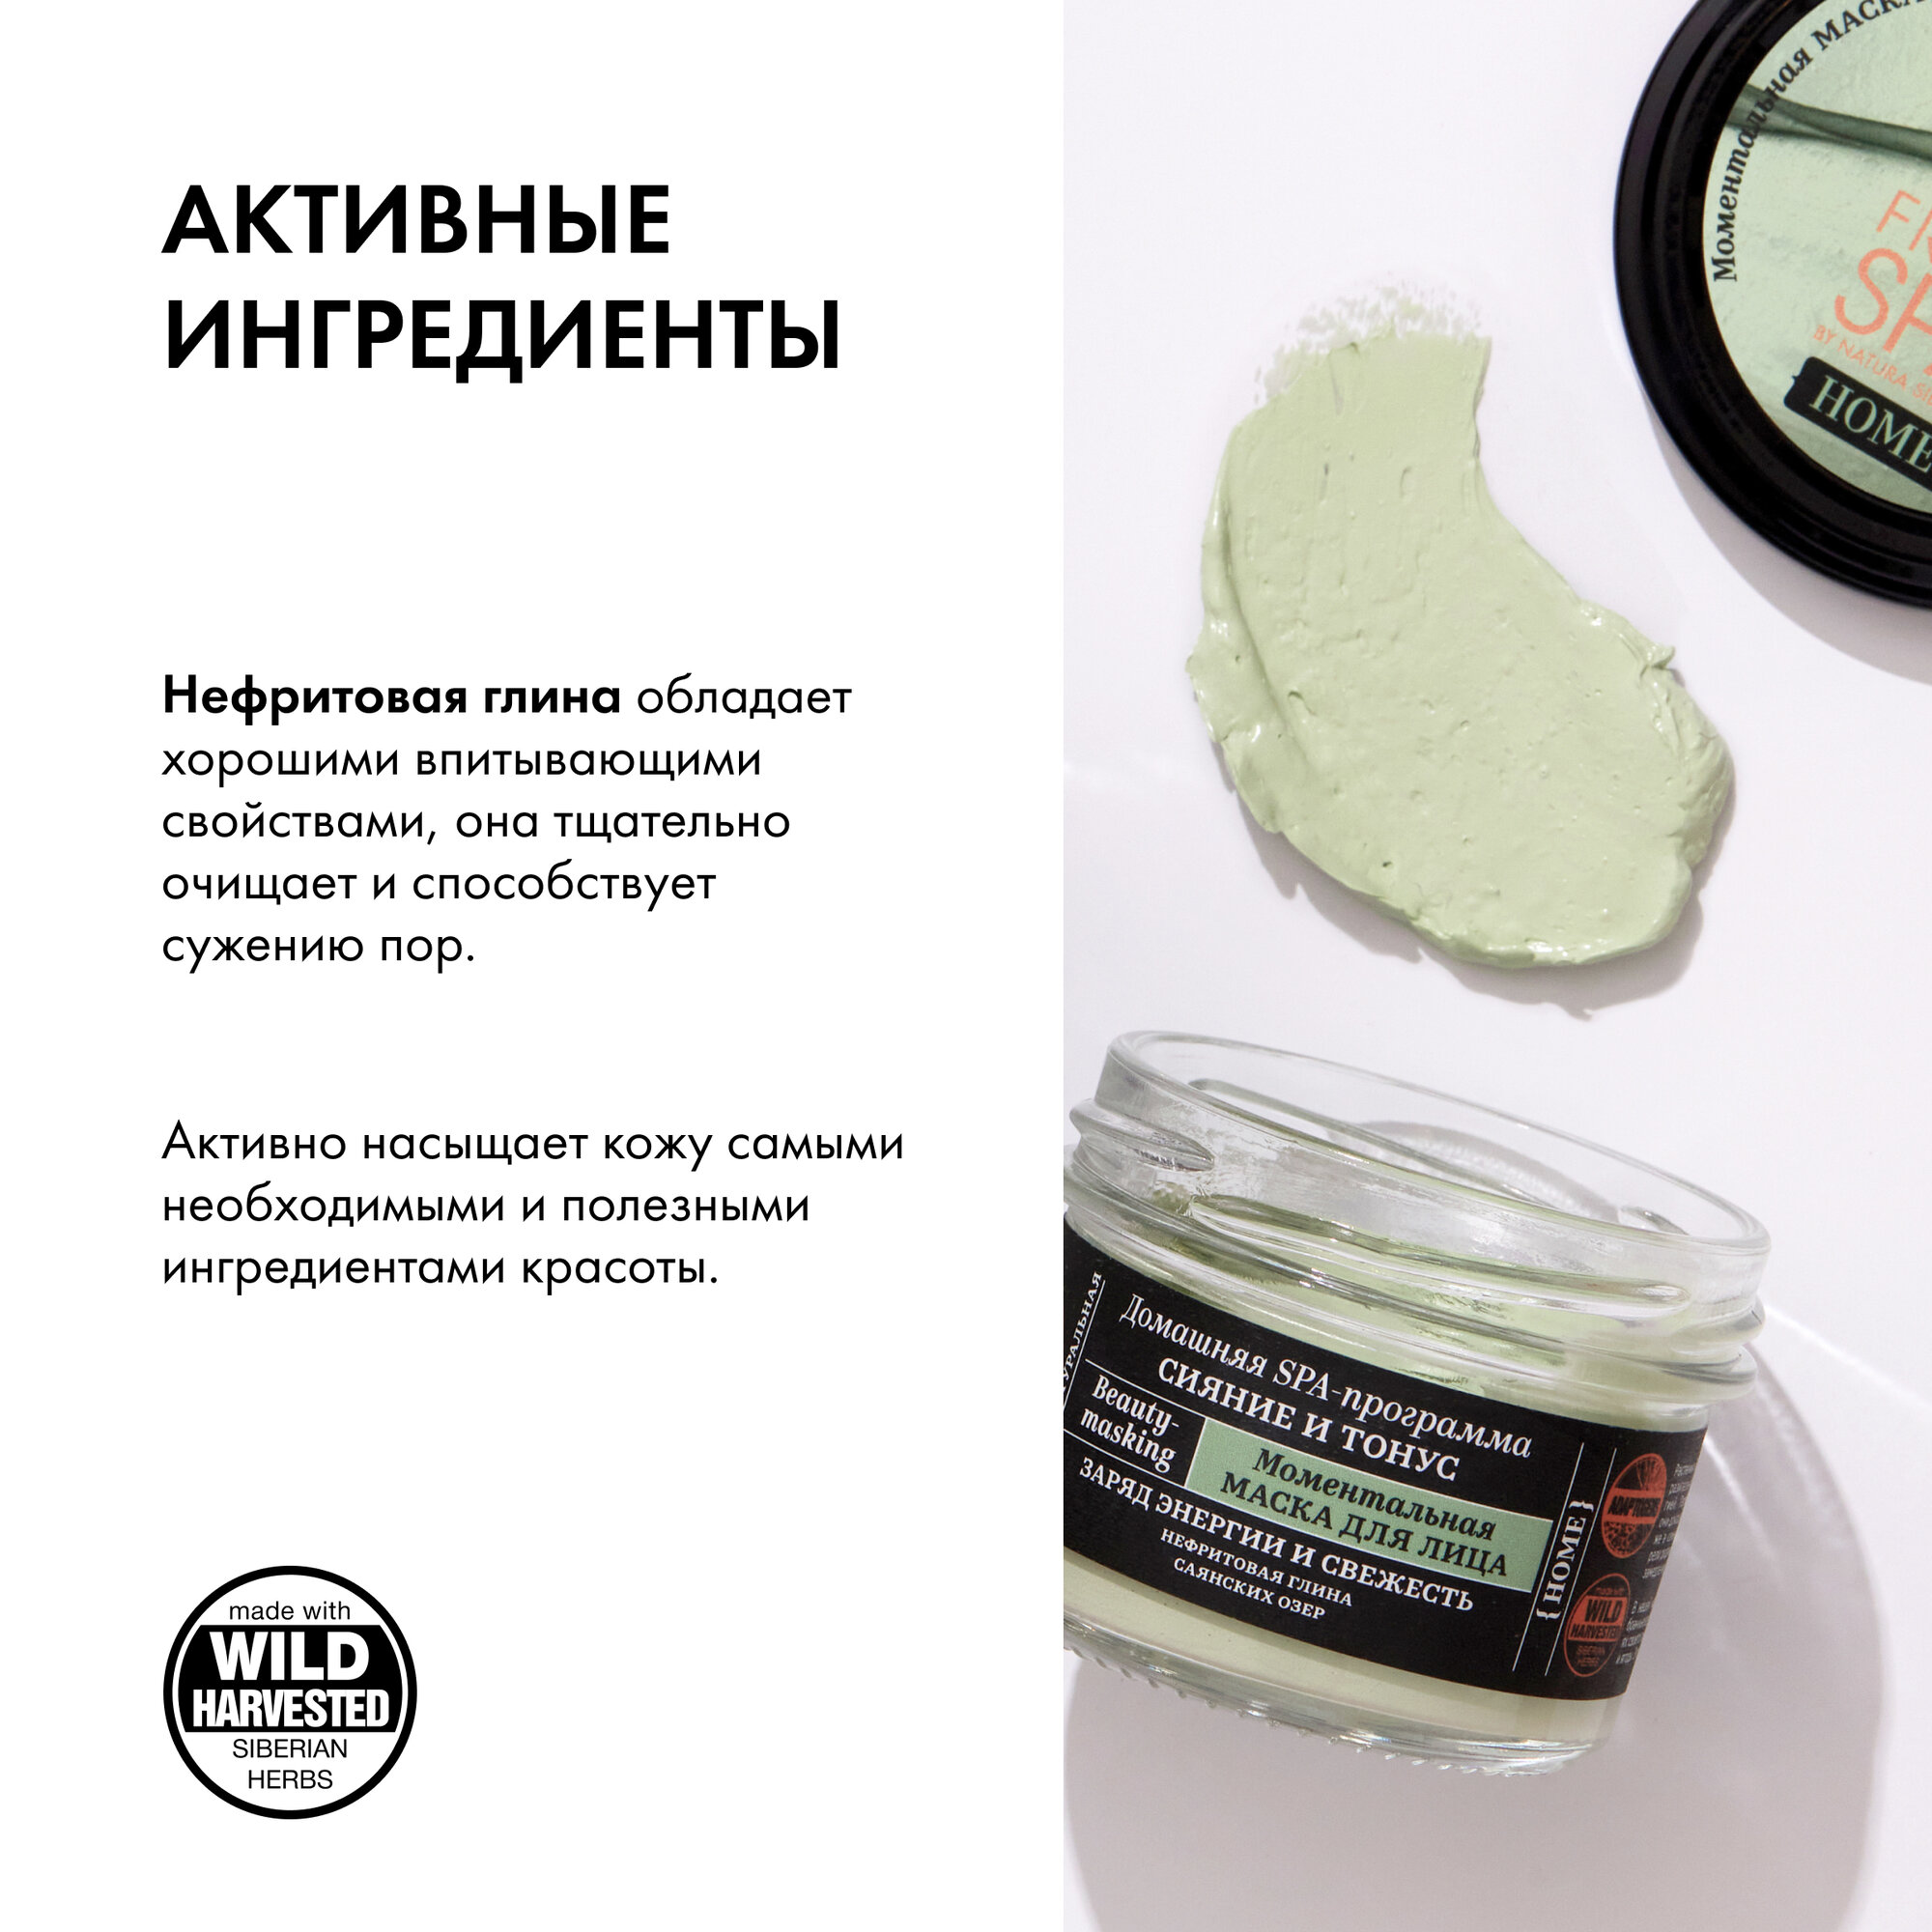 Моментальная маска Natura Siberica Fresh Spa Home Beauty-masking для лица Сияние и Тонус, 75 мл